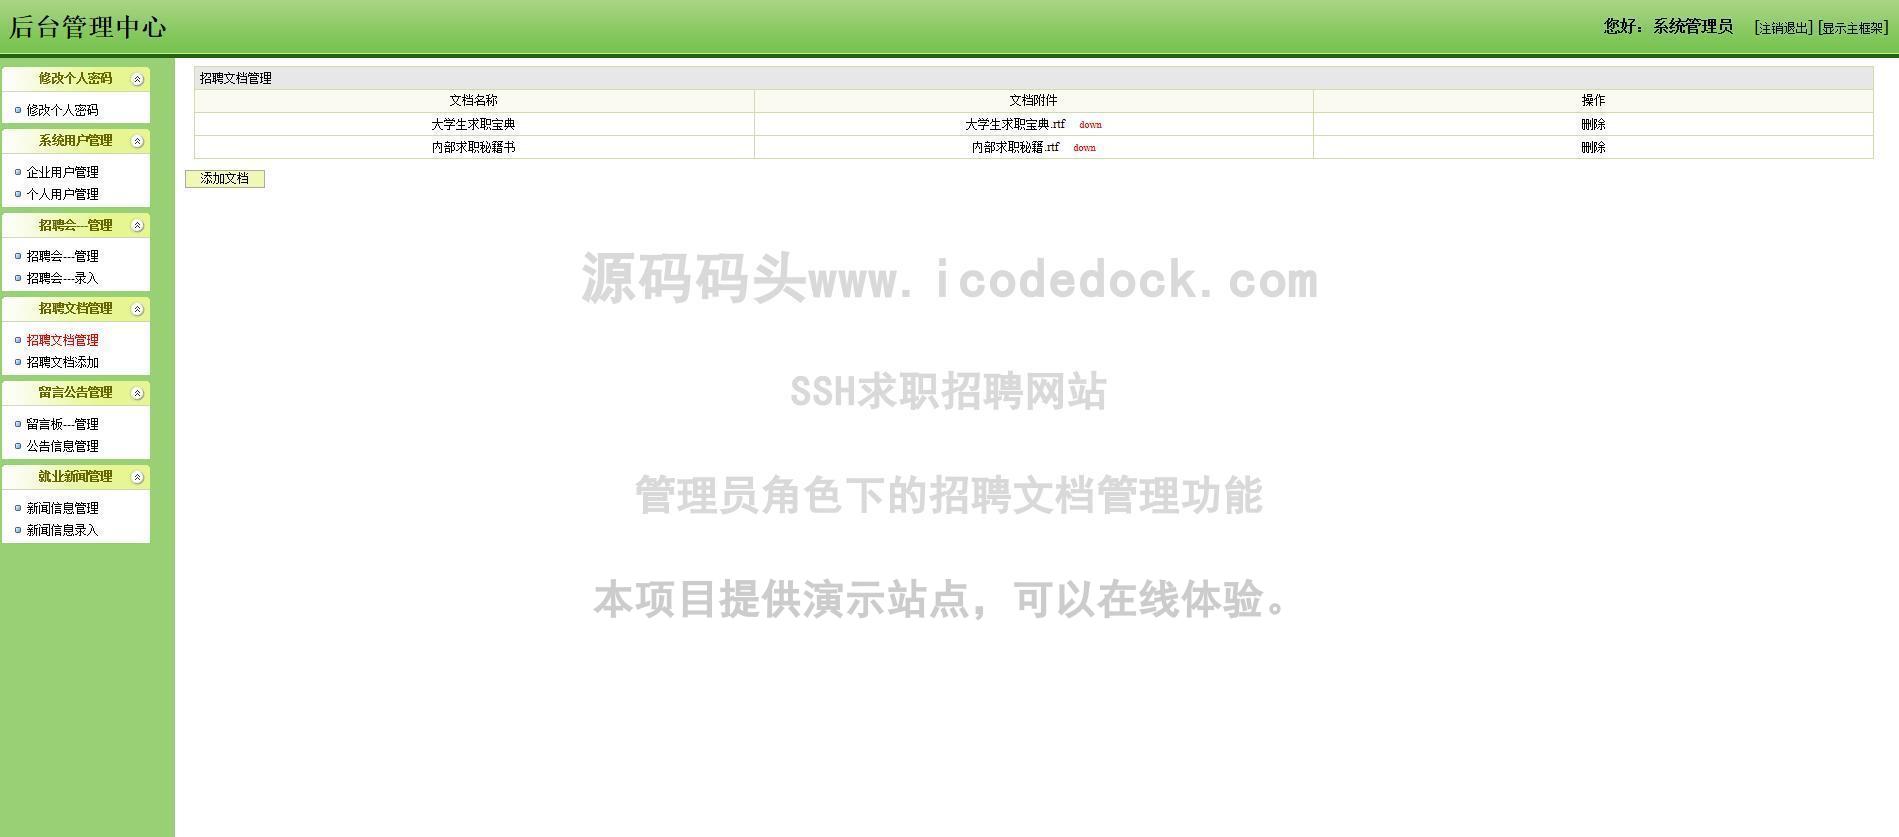 源码码头-SSH求职招聘网站-管理员角色-招聘文档管理